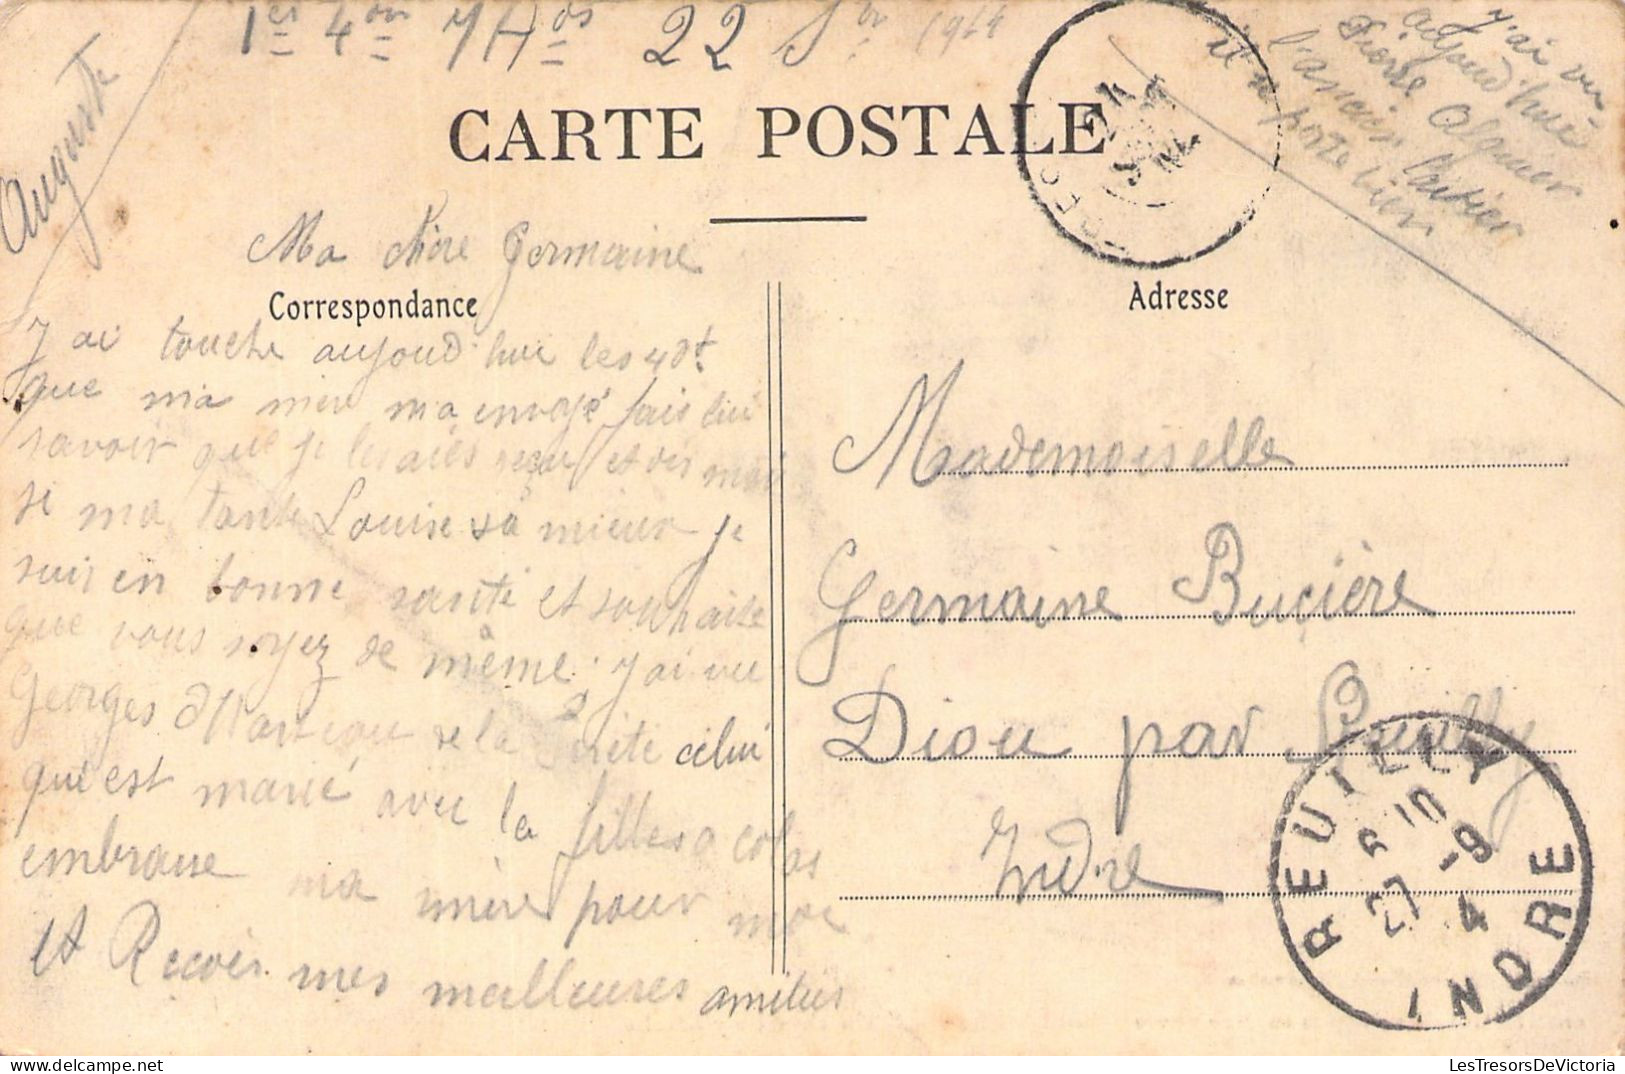 MILITARIA - La Cavalerie Légère En Manoeuvre - Passage D'un Gué - Un Cheval S'y Couche - Carte Postale Ancienne - Manoeuvres